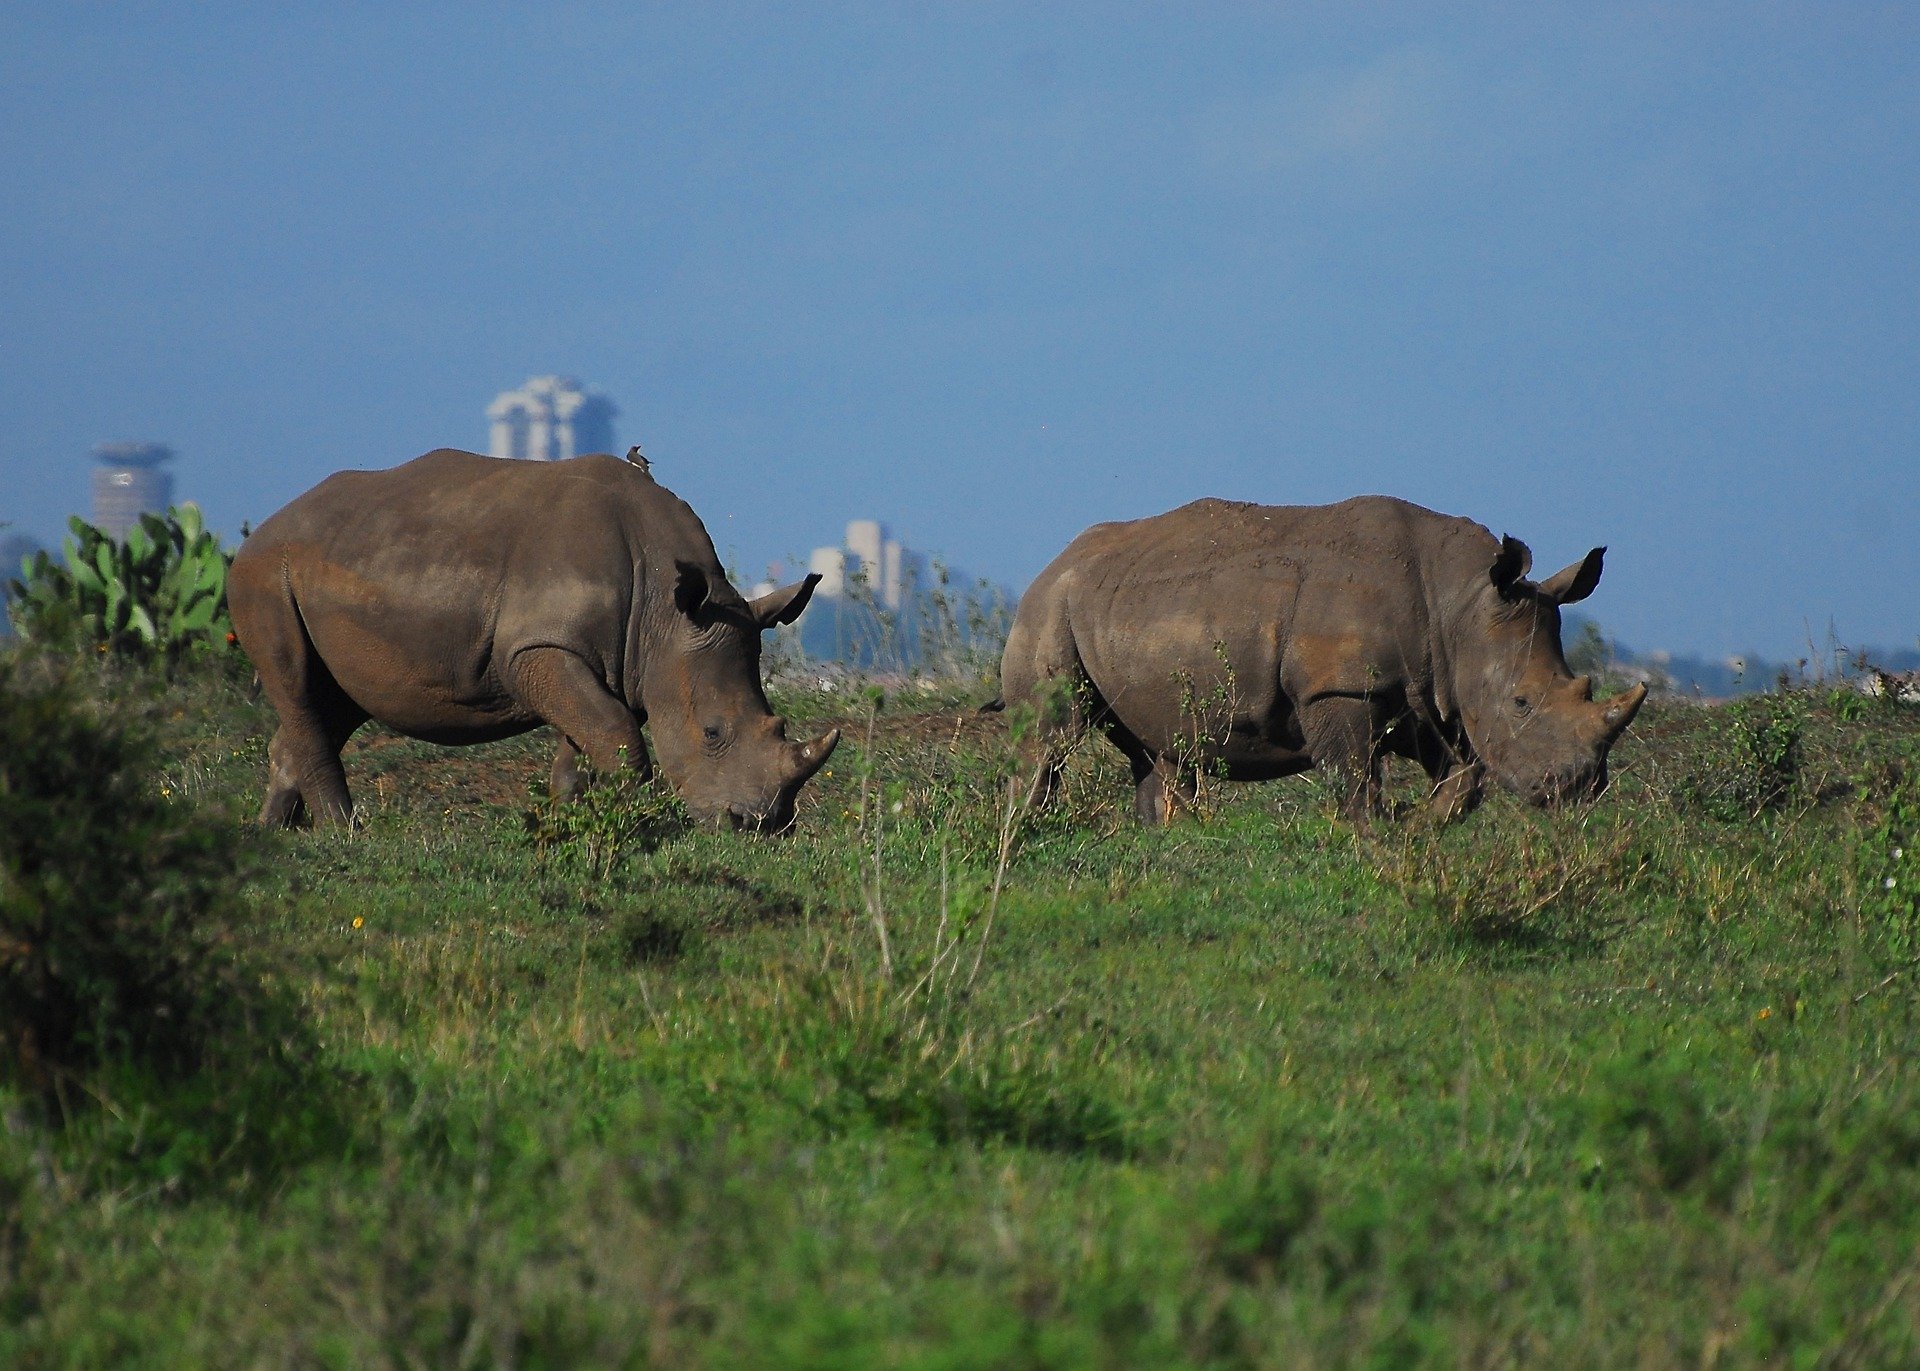 Rhinos grazing in Nairobi National Park